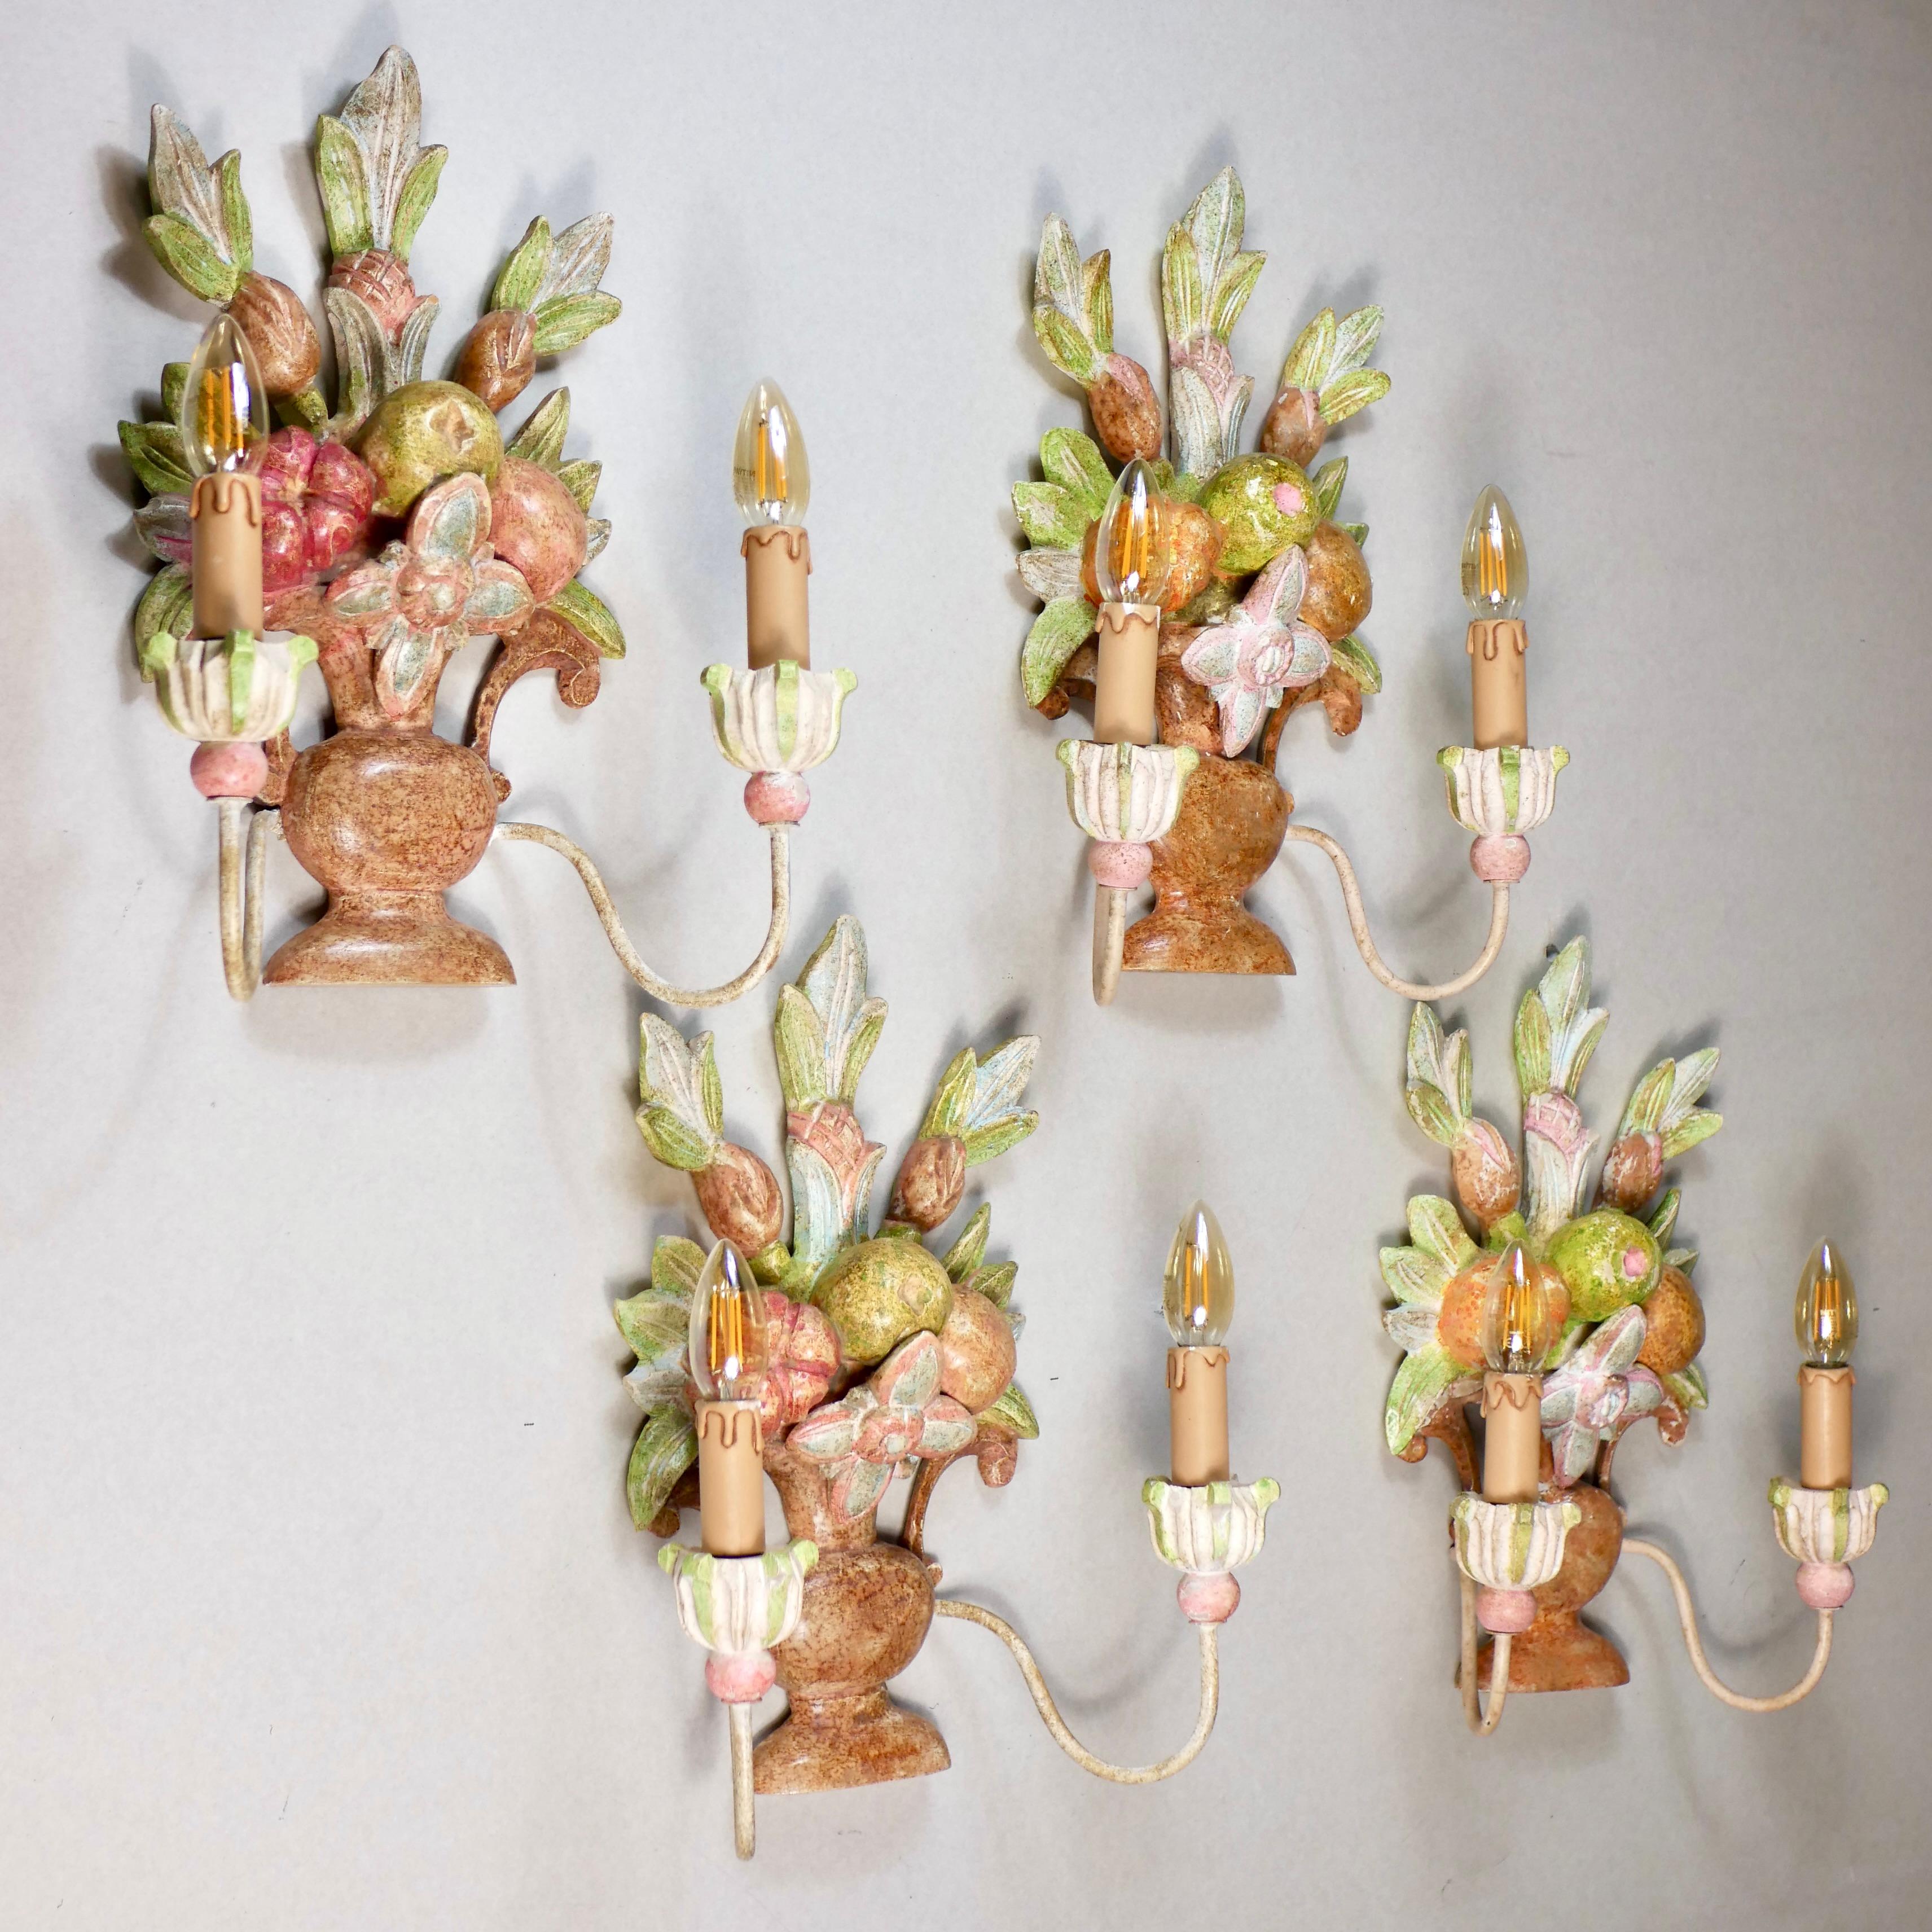 Schöner Satz von 4 handgeschnitzten Holzleuchtern aus Italien aus dem frühen 20. Jahrhundert, die Blumensträuße, Blätter und Früchte darstellen, im Stil von Maison Jansen.
Jede Leuchte ist handbemalt und hat zwei 